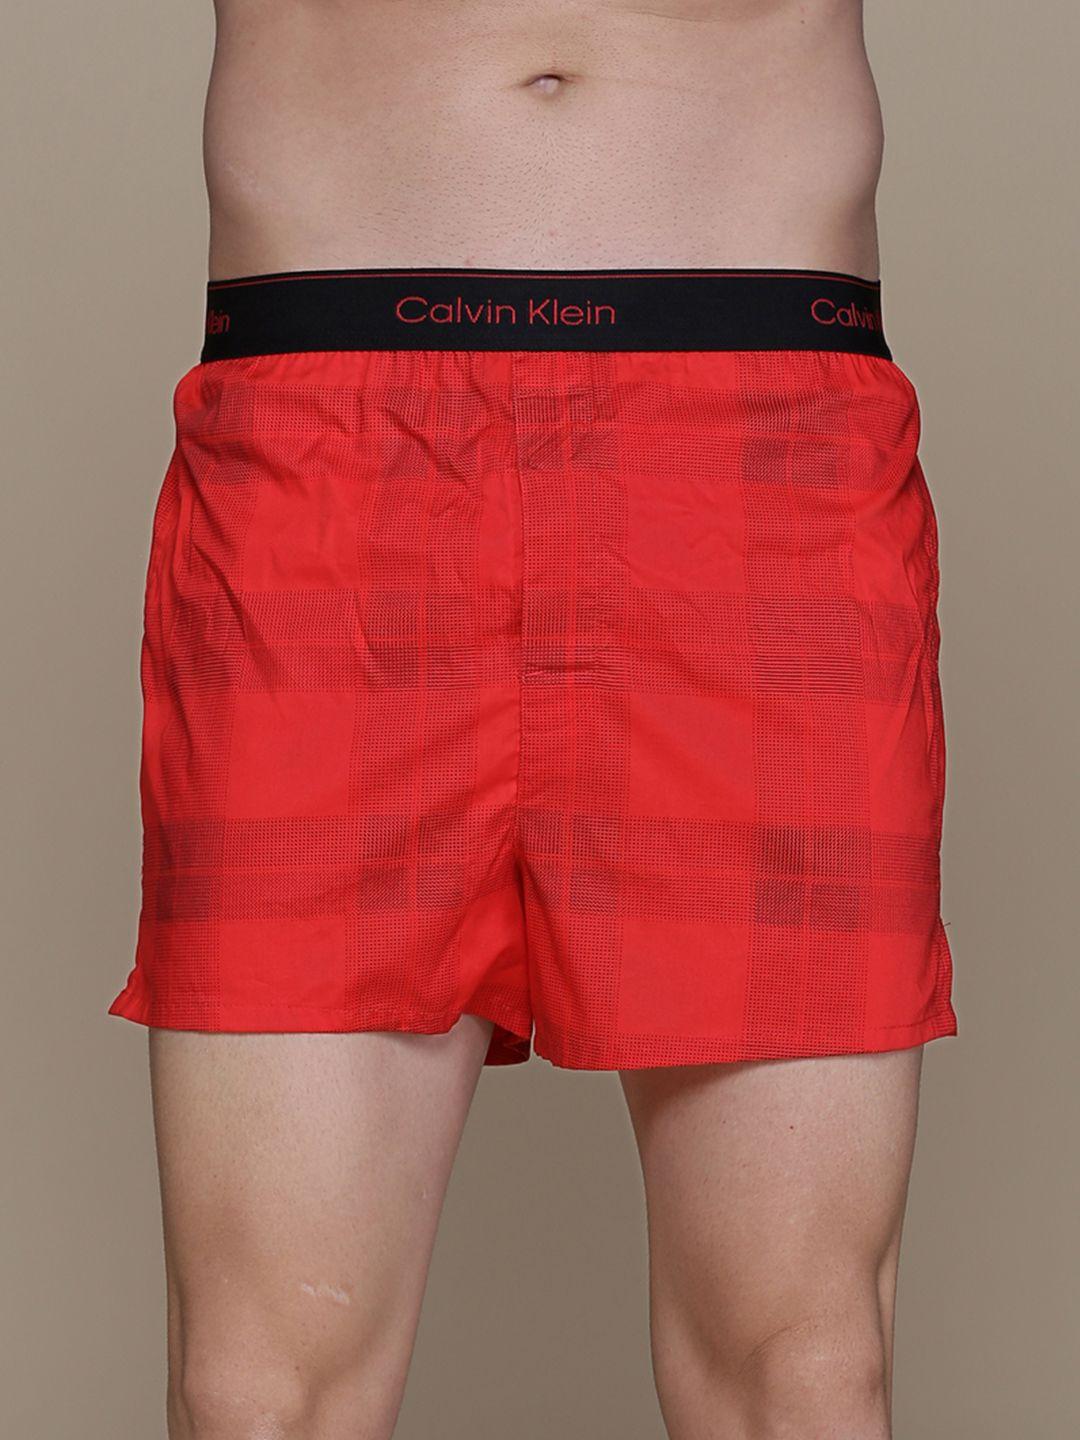 calvin klein underwear men red checked boxers nb33615vn